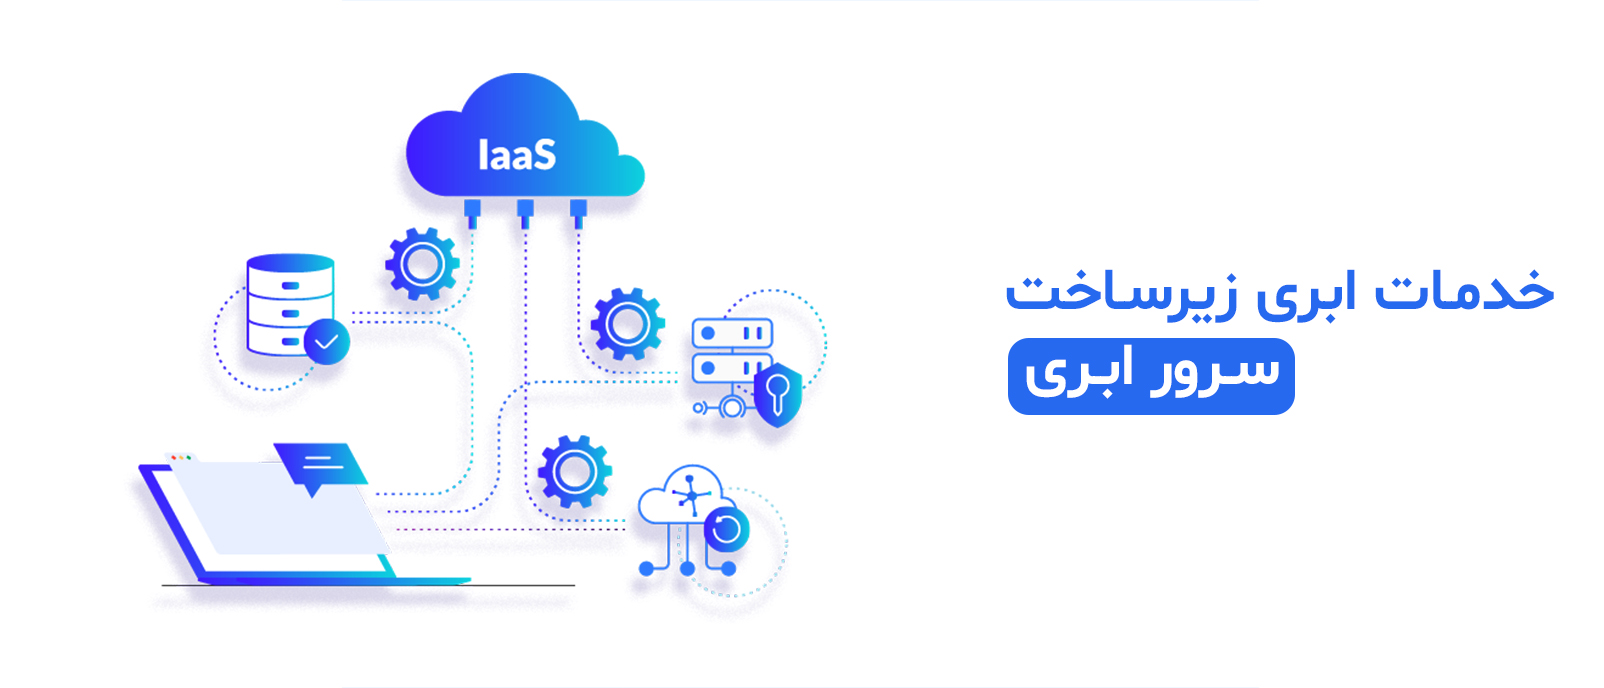 خدمات ابری زیرساخت IaaS چیست